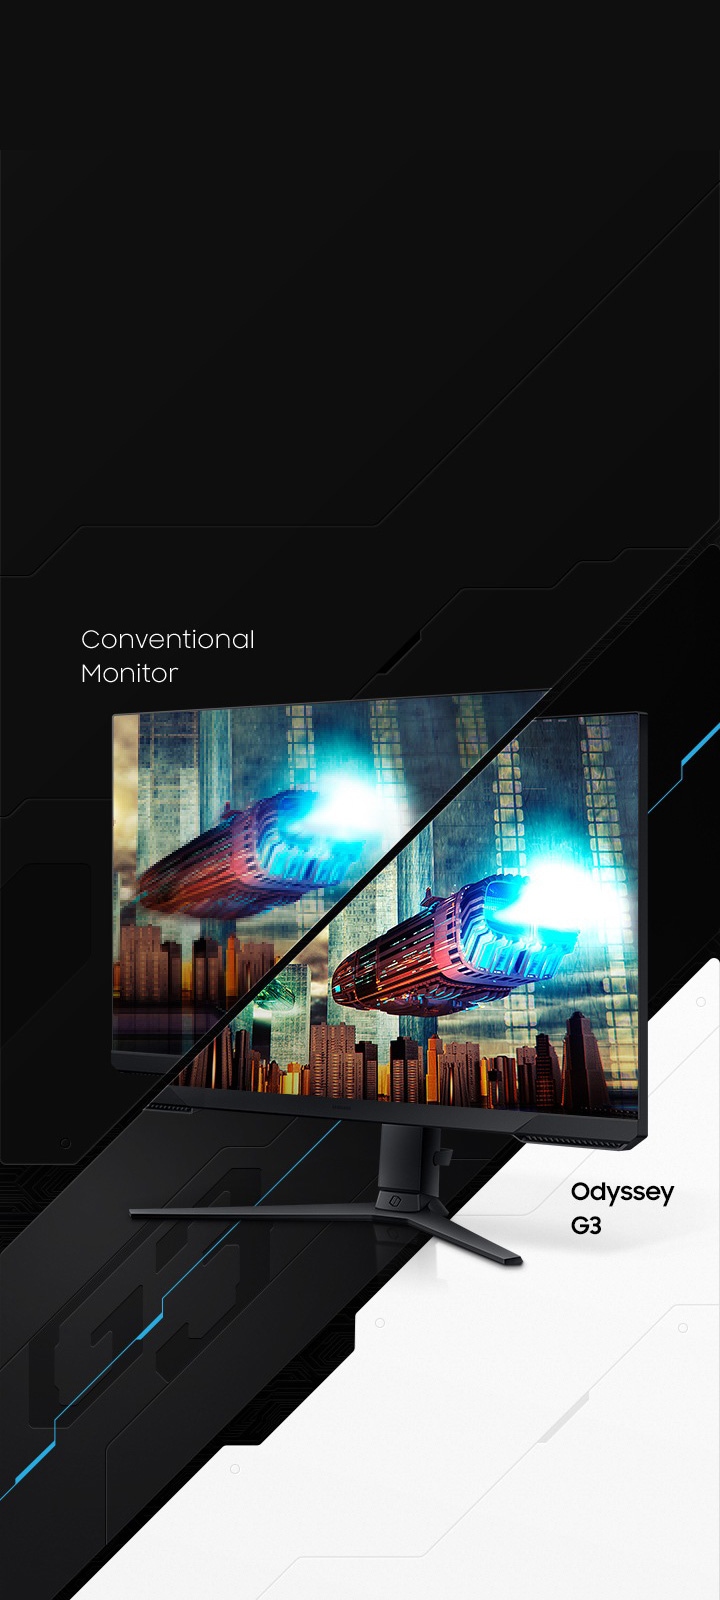 Monitor Gamer LG UltraGear GN60R de 23.8 pulg. FHD con AMD FreeSync Premium